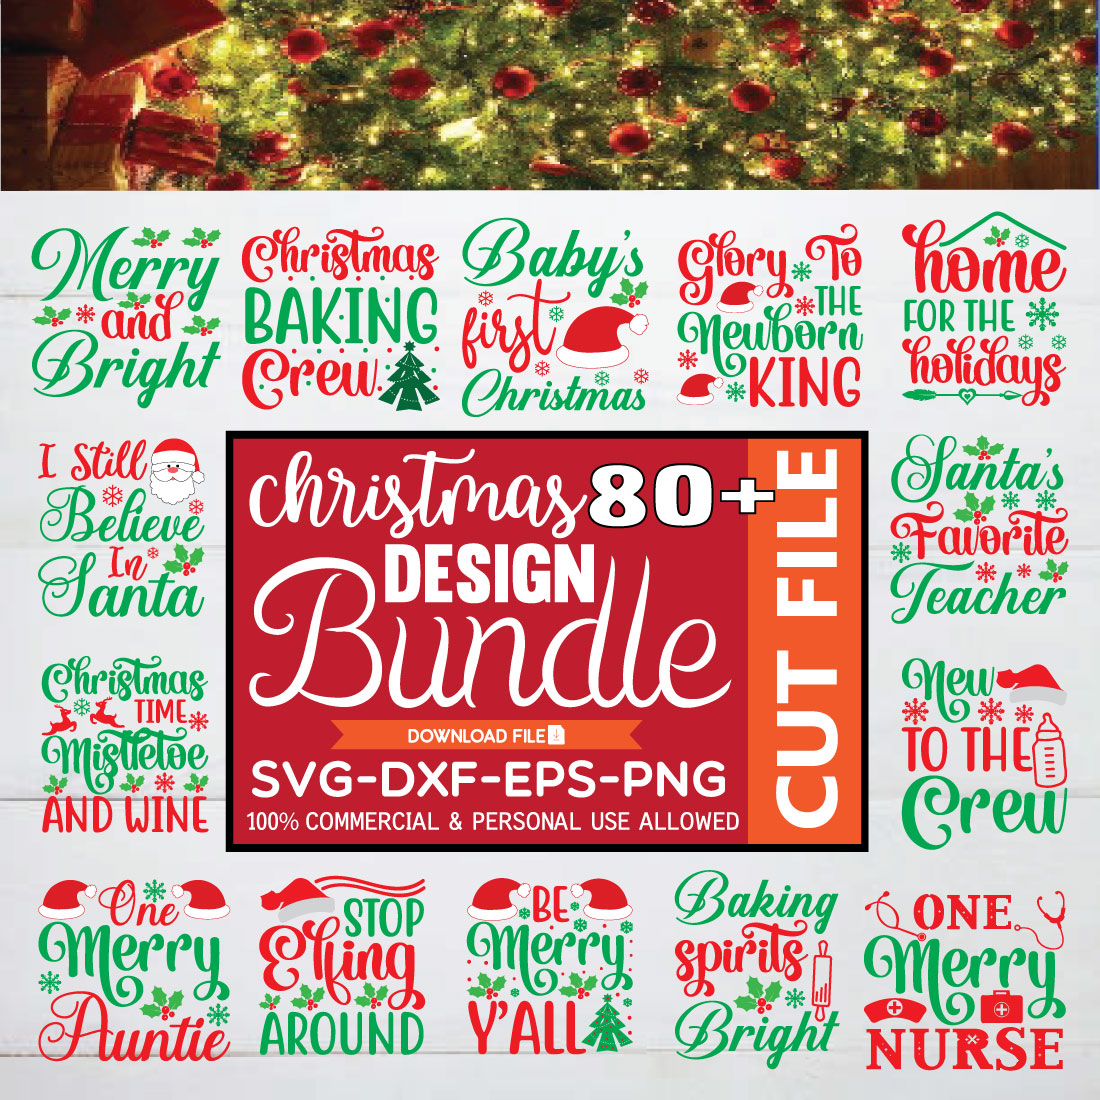 80 Christmas SVG DESIGN BUNDLE, Christmas SVG B UNDLE, Christmas SVG QUTORES, Christmas T-SHIRT BUNDLE cover image.